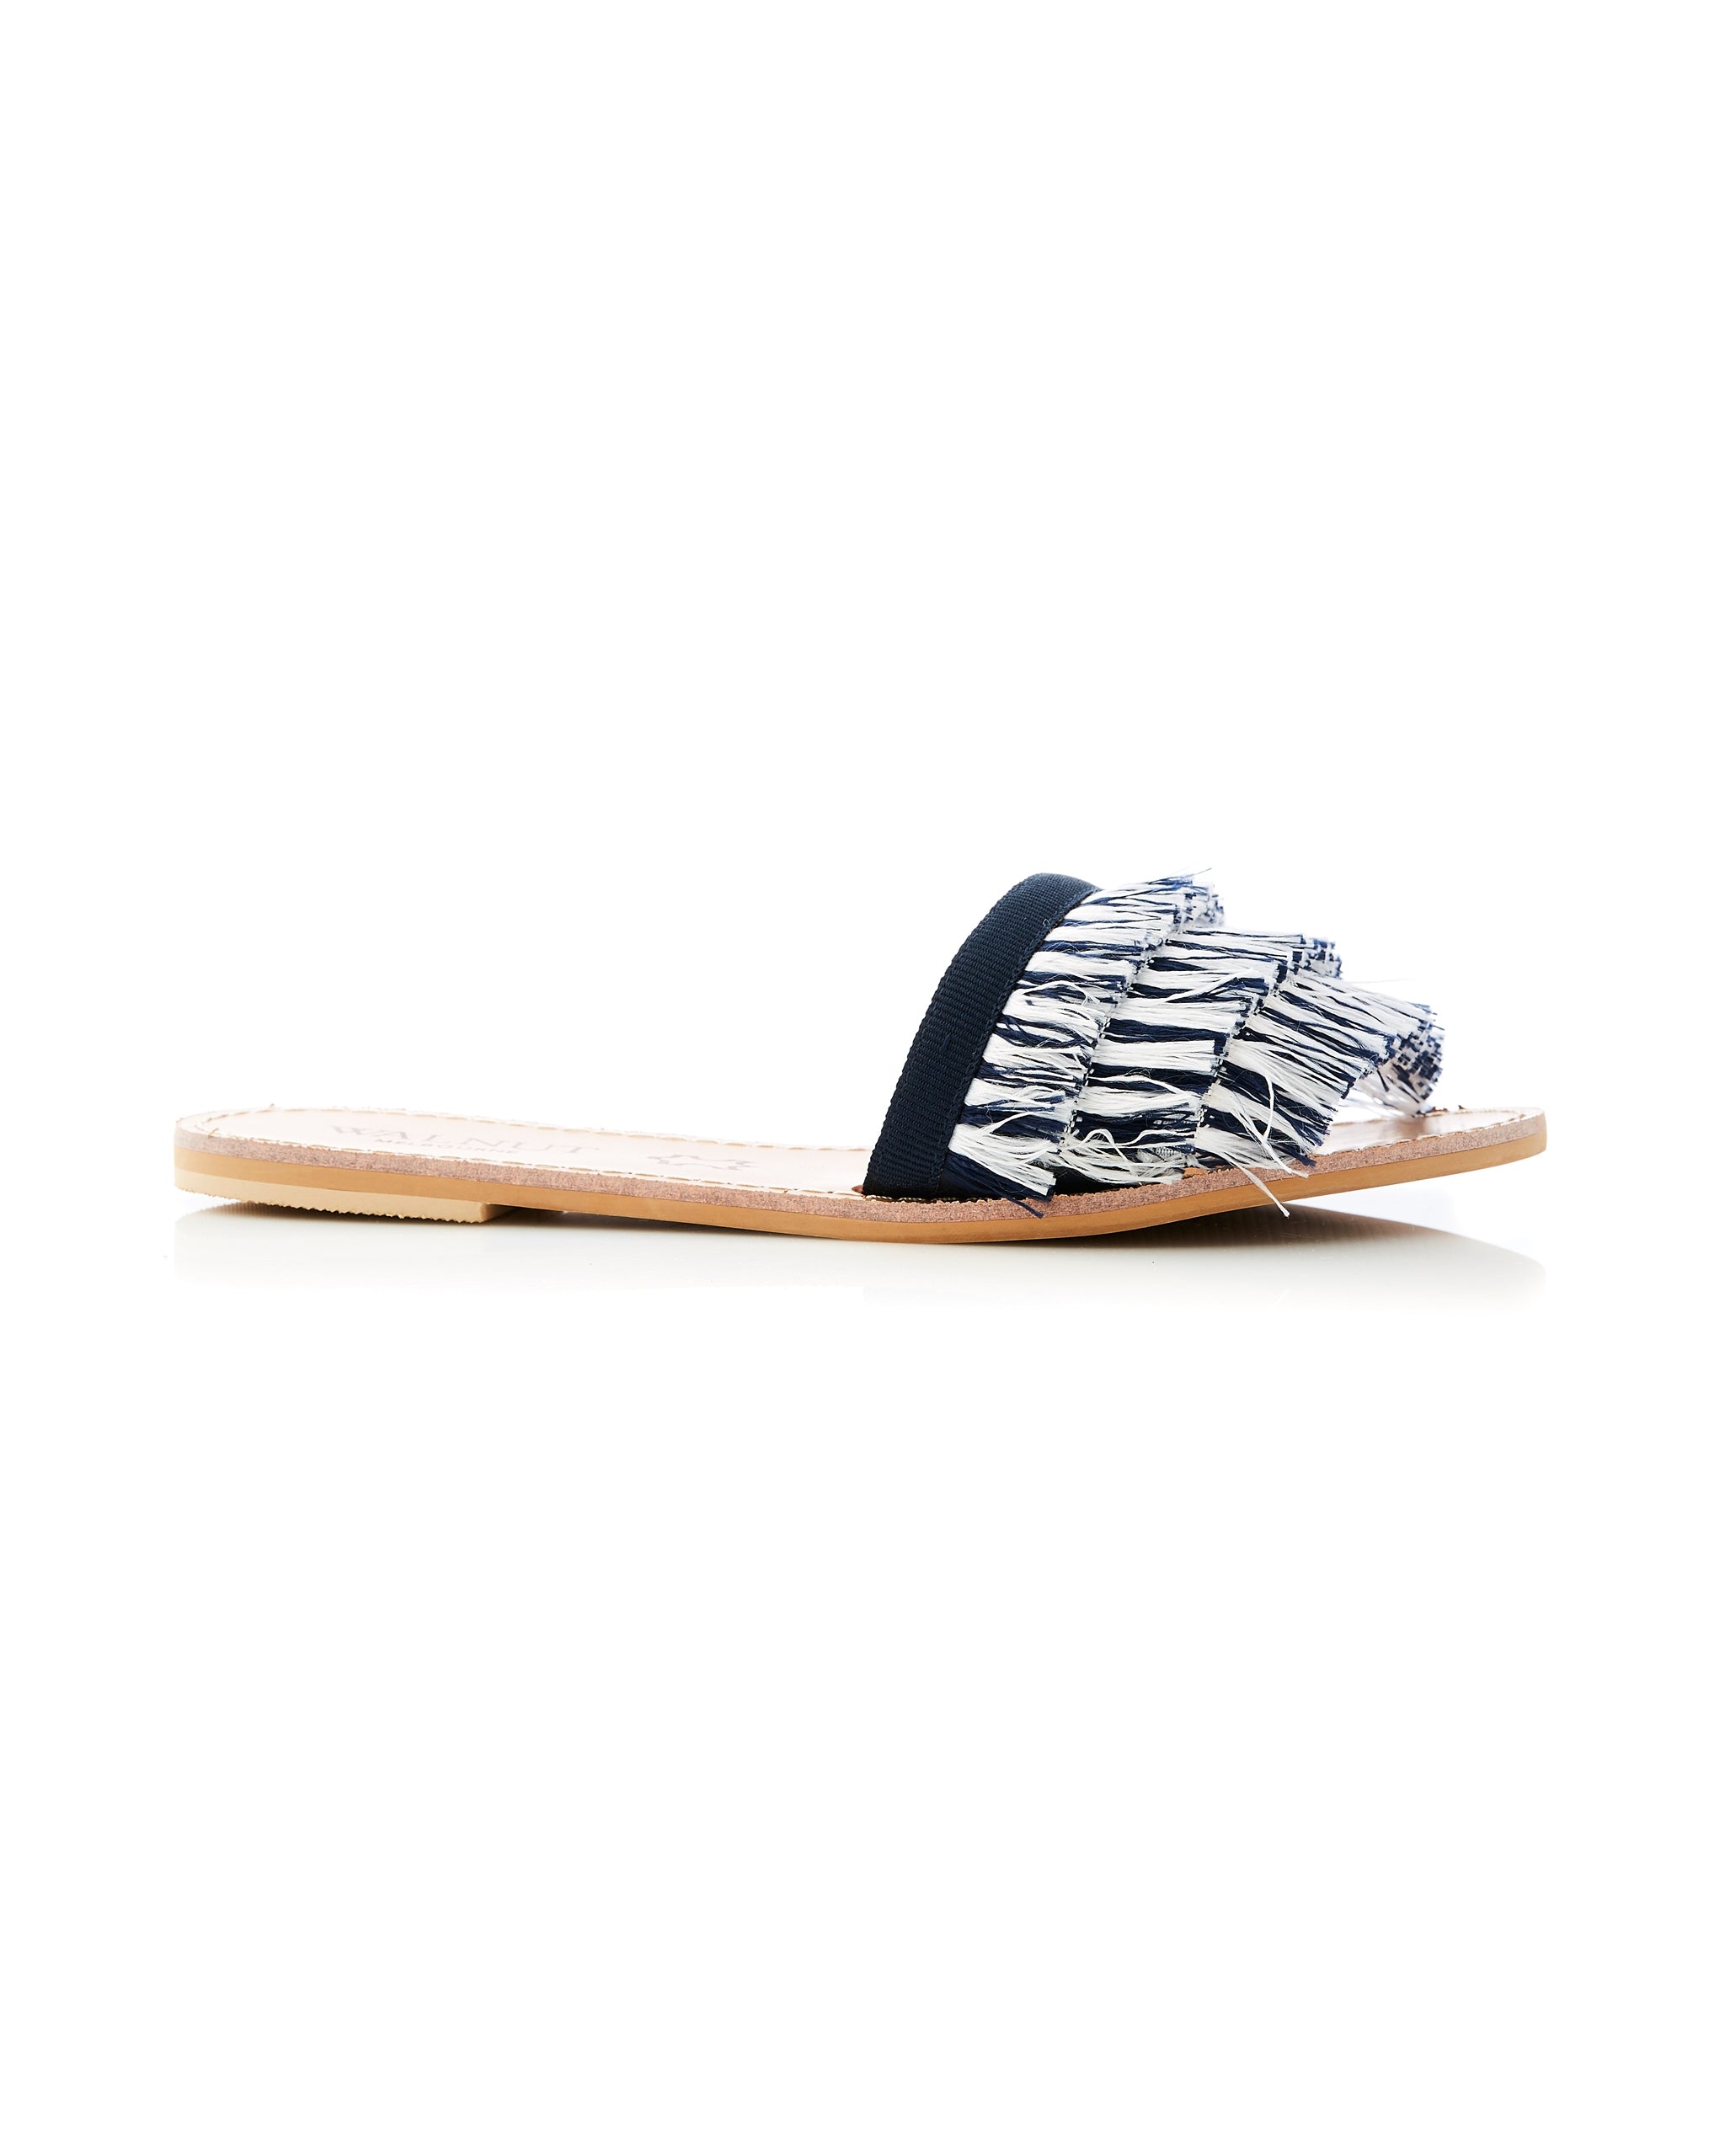 Mykonos Fringed Sandal Slide Side View